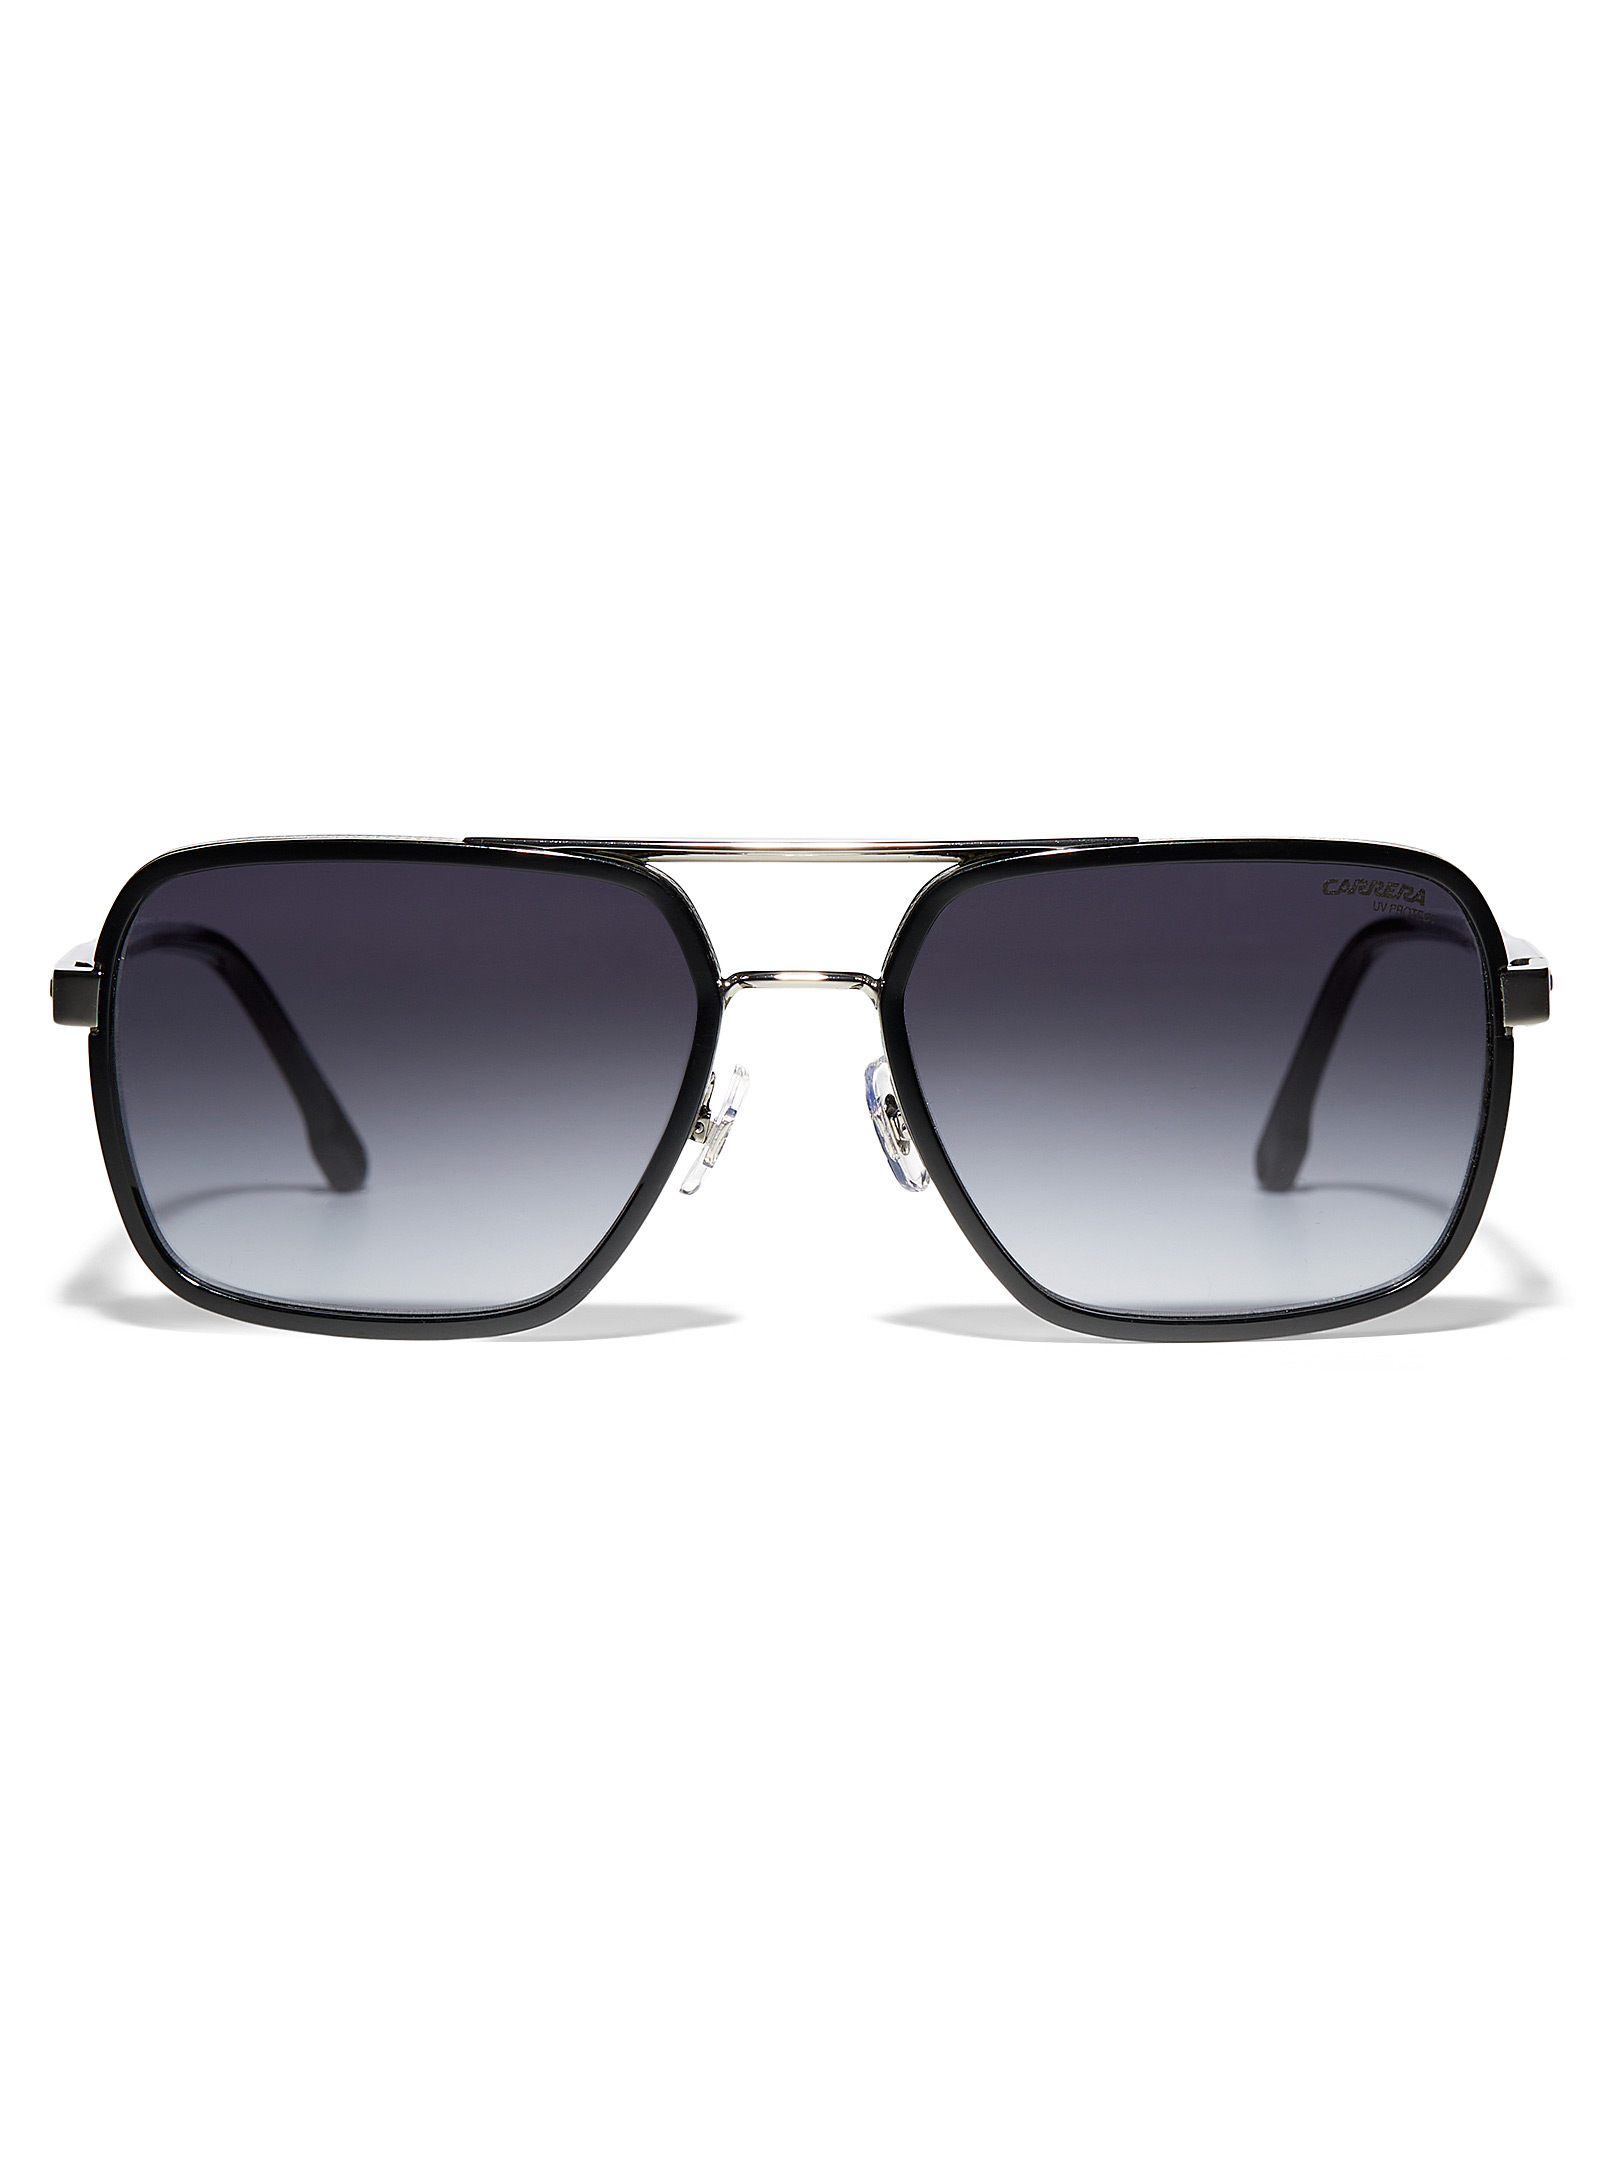 Carrera Square Aviator Sunglasses In Black